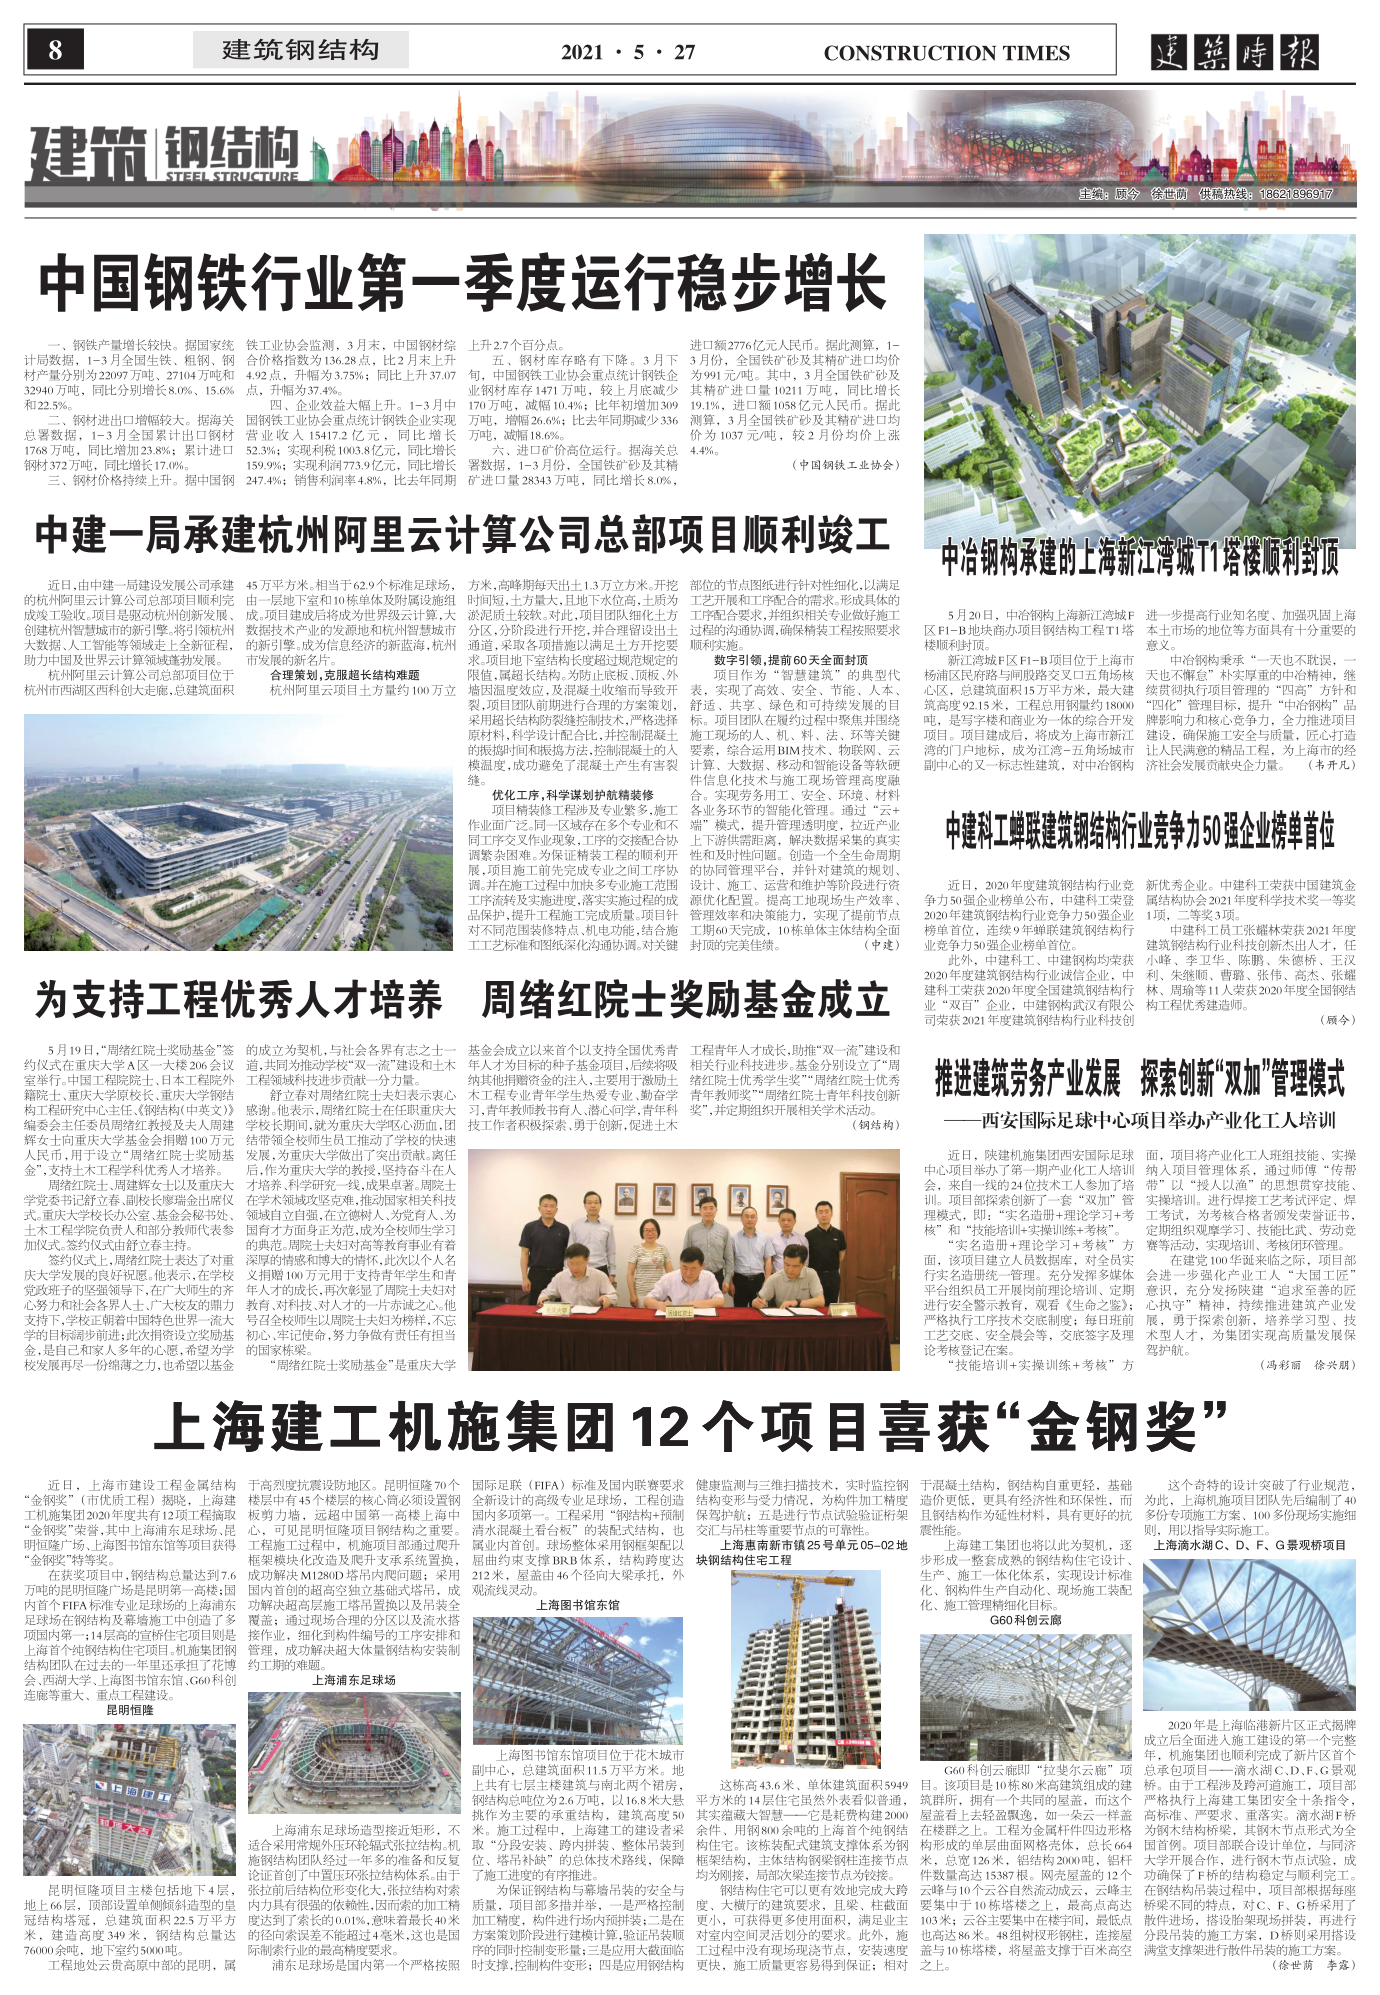 2021.05.27  中冶钢构承建的上海新江湾城T1塔楼顺利封顶_1.png